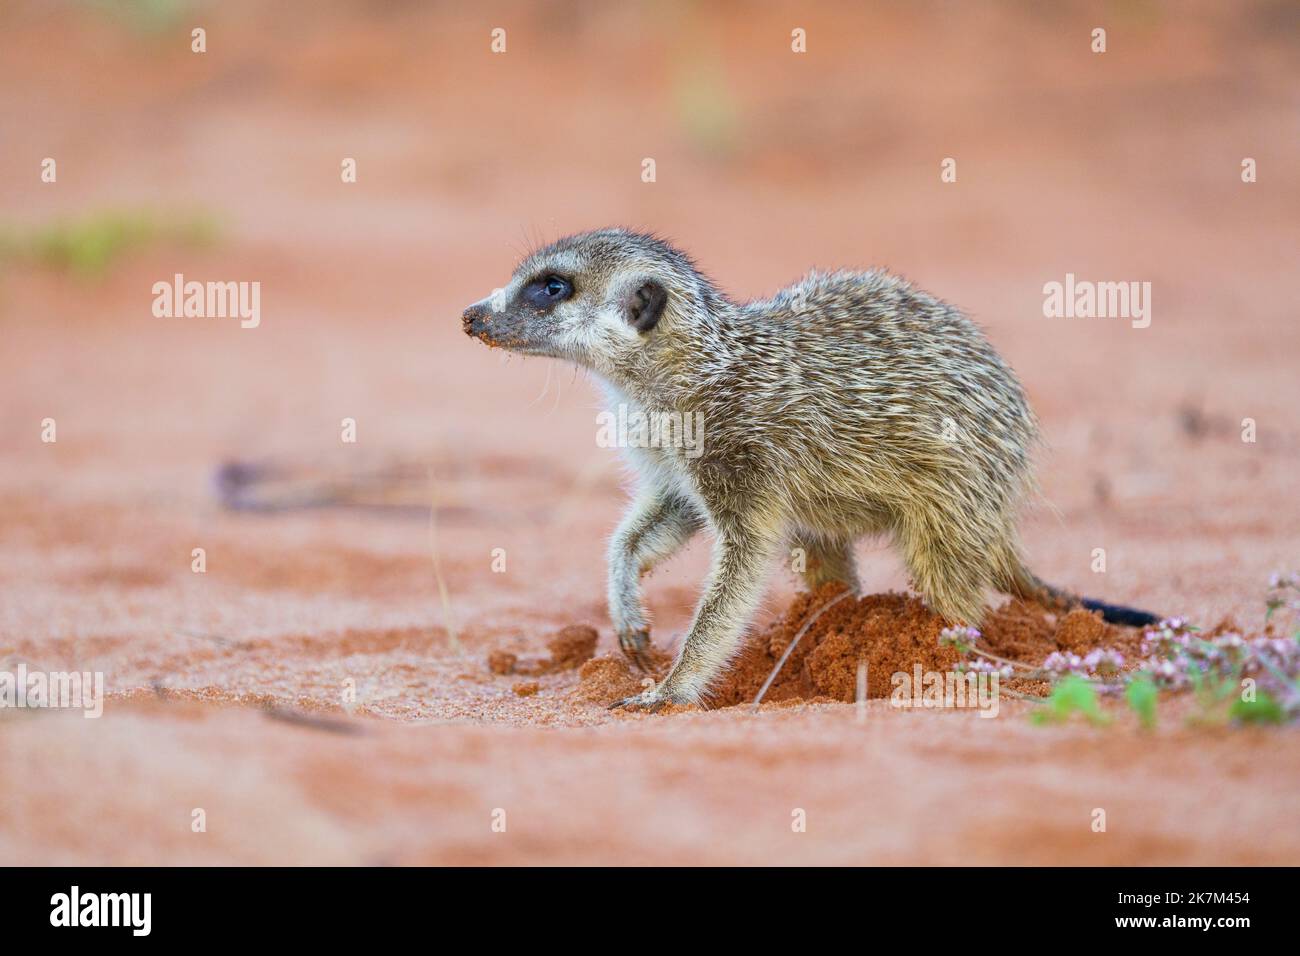 Le bébé Meerkat (Suricata suricata) creuse dans le sol rouge pour les insectes, les animaux, la nourriture. Kalahari, Afrique du Sud Banque D'Images